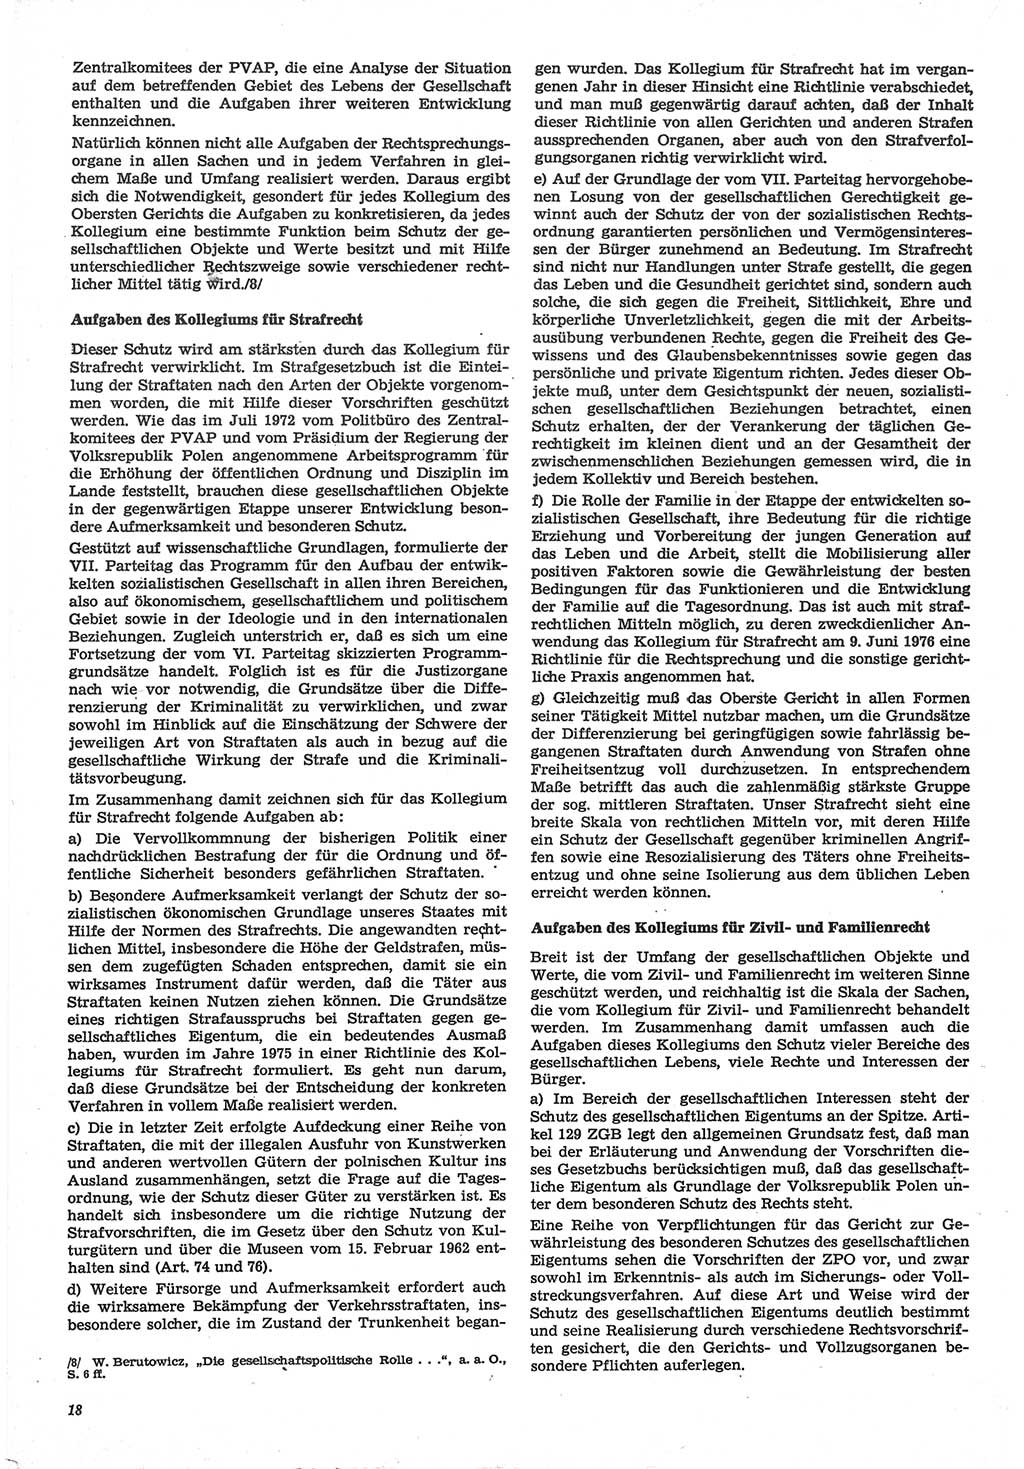 Neue Justiz (NJ), Zeitschrift für Recht und Rechtswissenschaft-Zeitschrift, sozialistisches Recht und Gesetzlichkeit, 31. Jahrgang 1977, Seite 18 (NJ DDR 1977, S. 18)